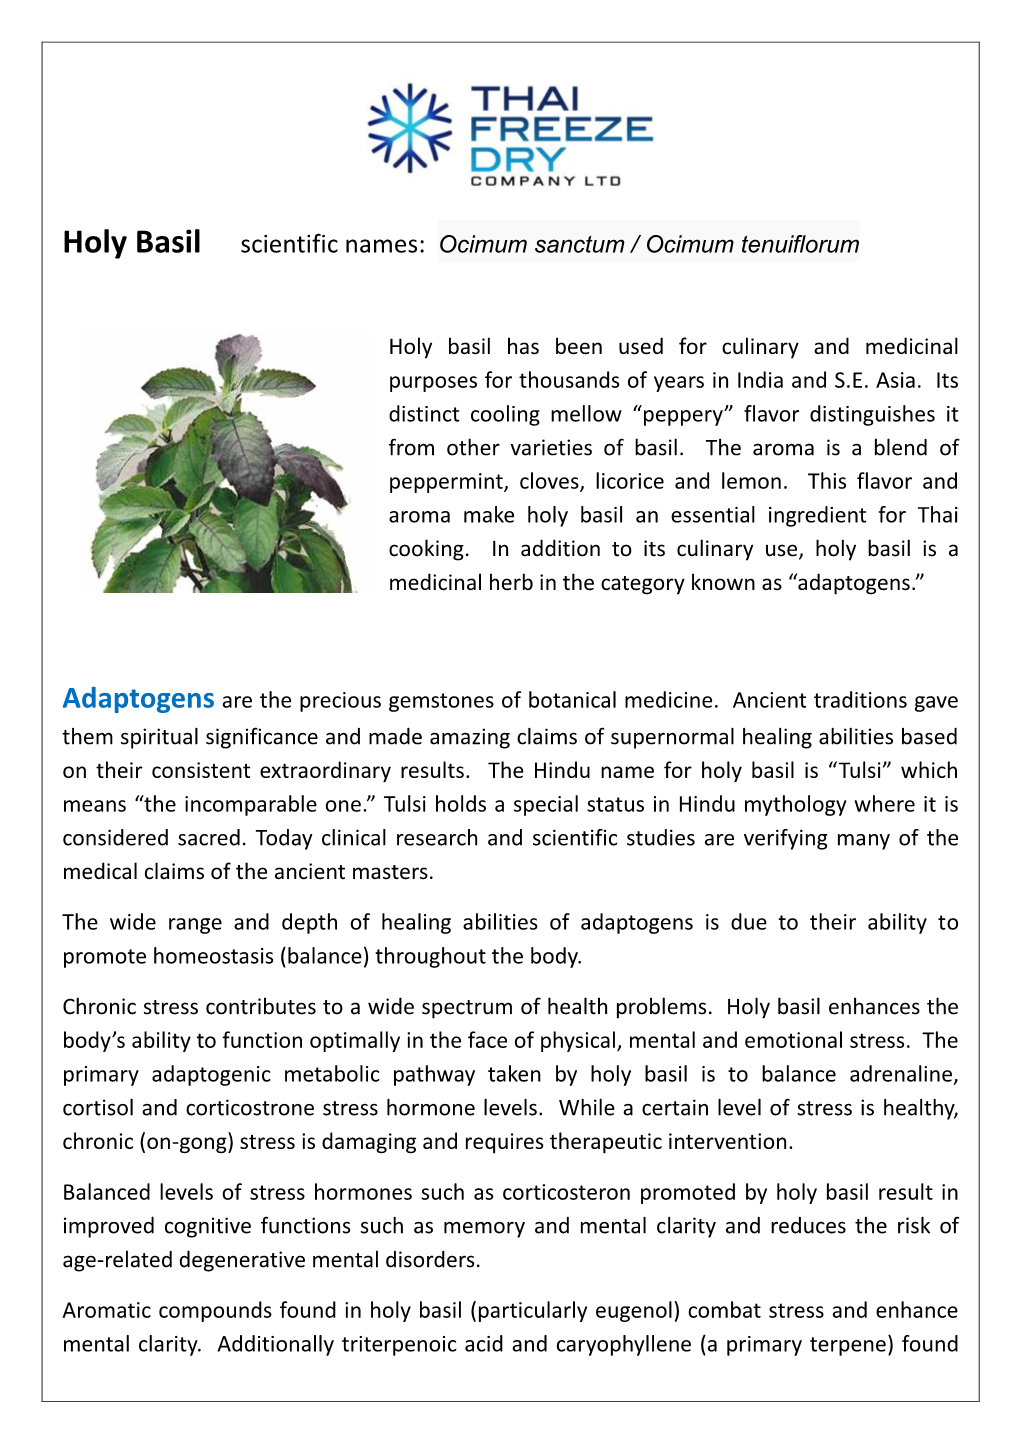 Holy Basil Scientific Names: Ocimum Sanctum / Ocimum Tenuiflorum